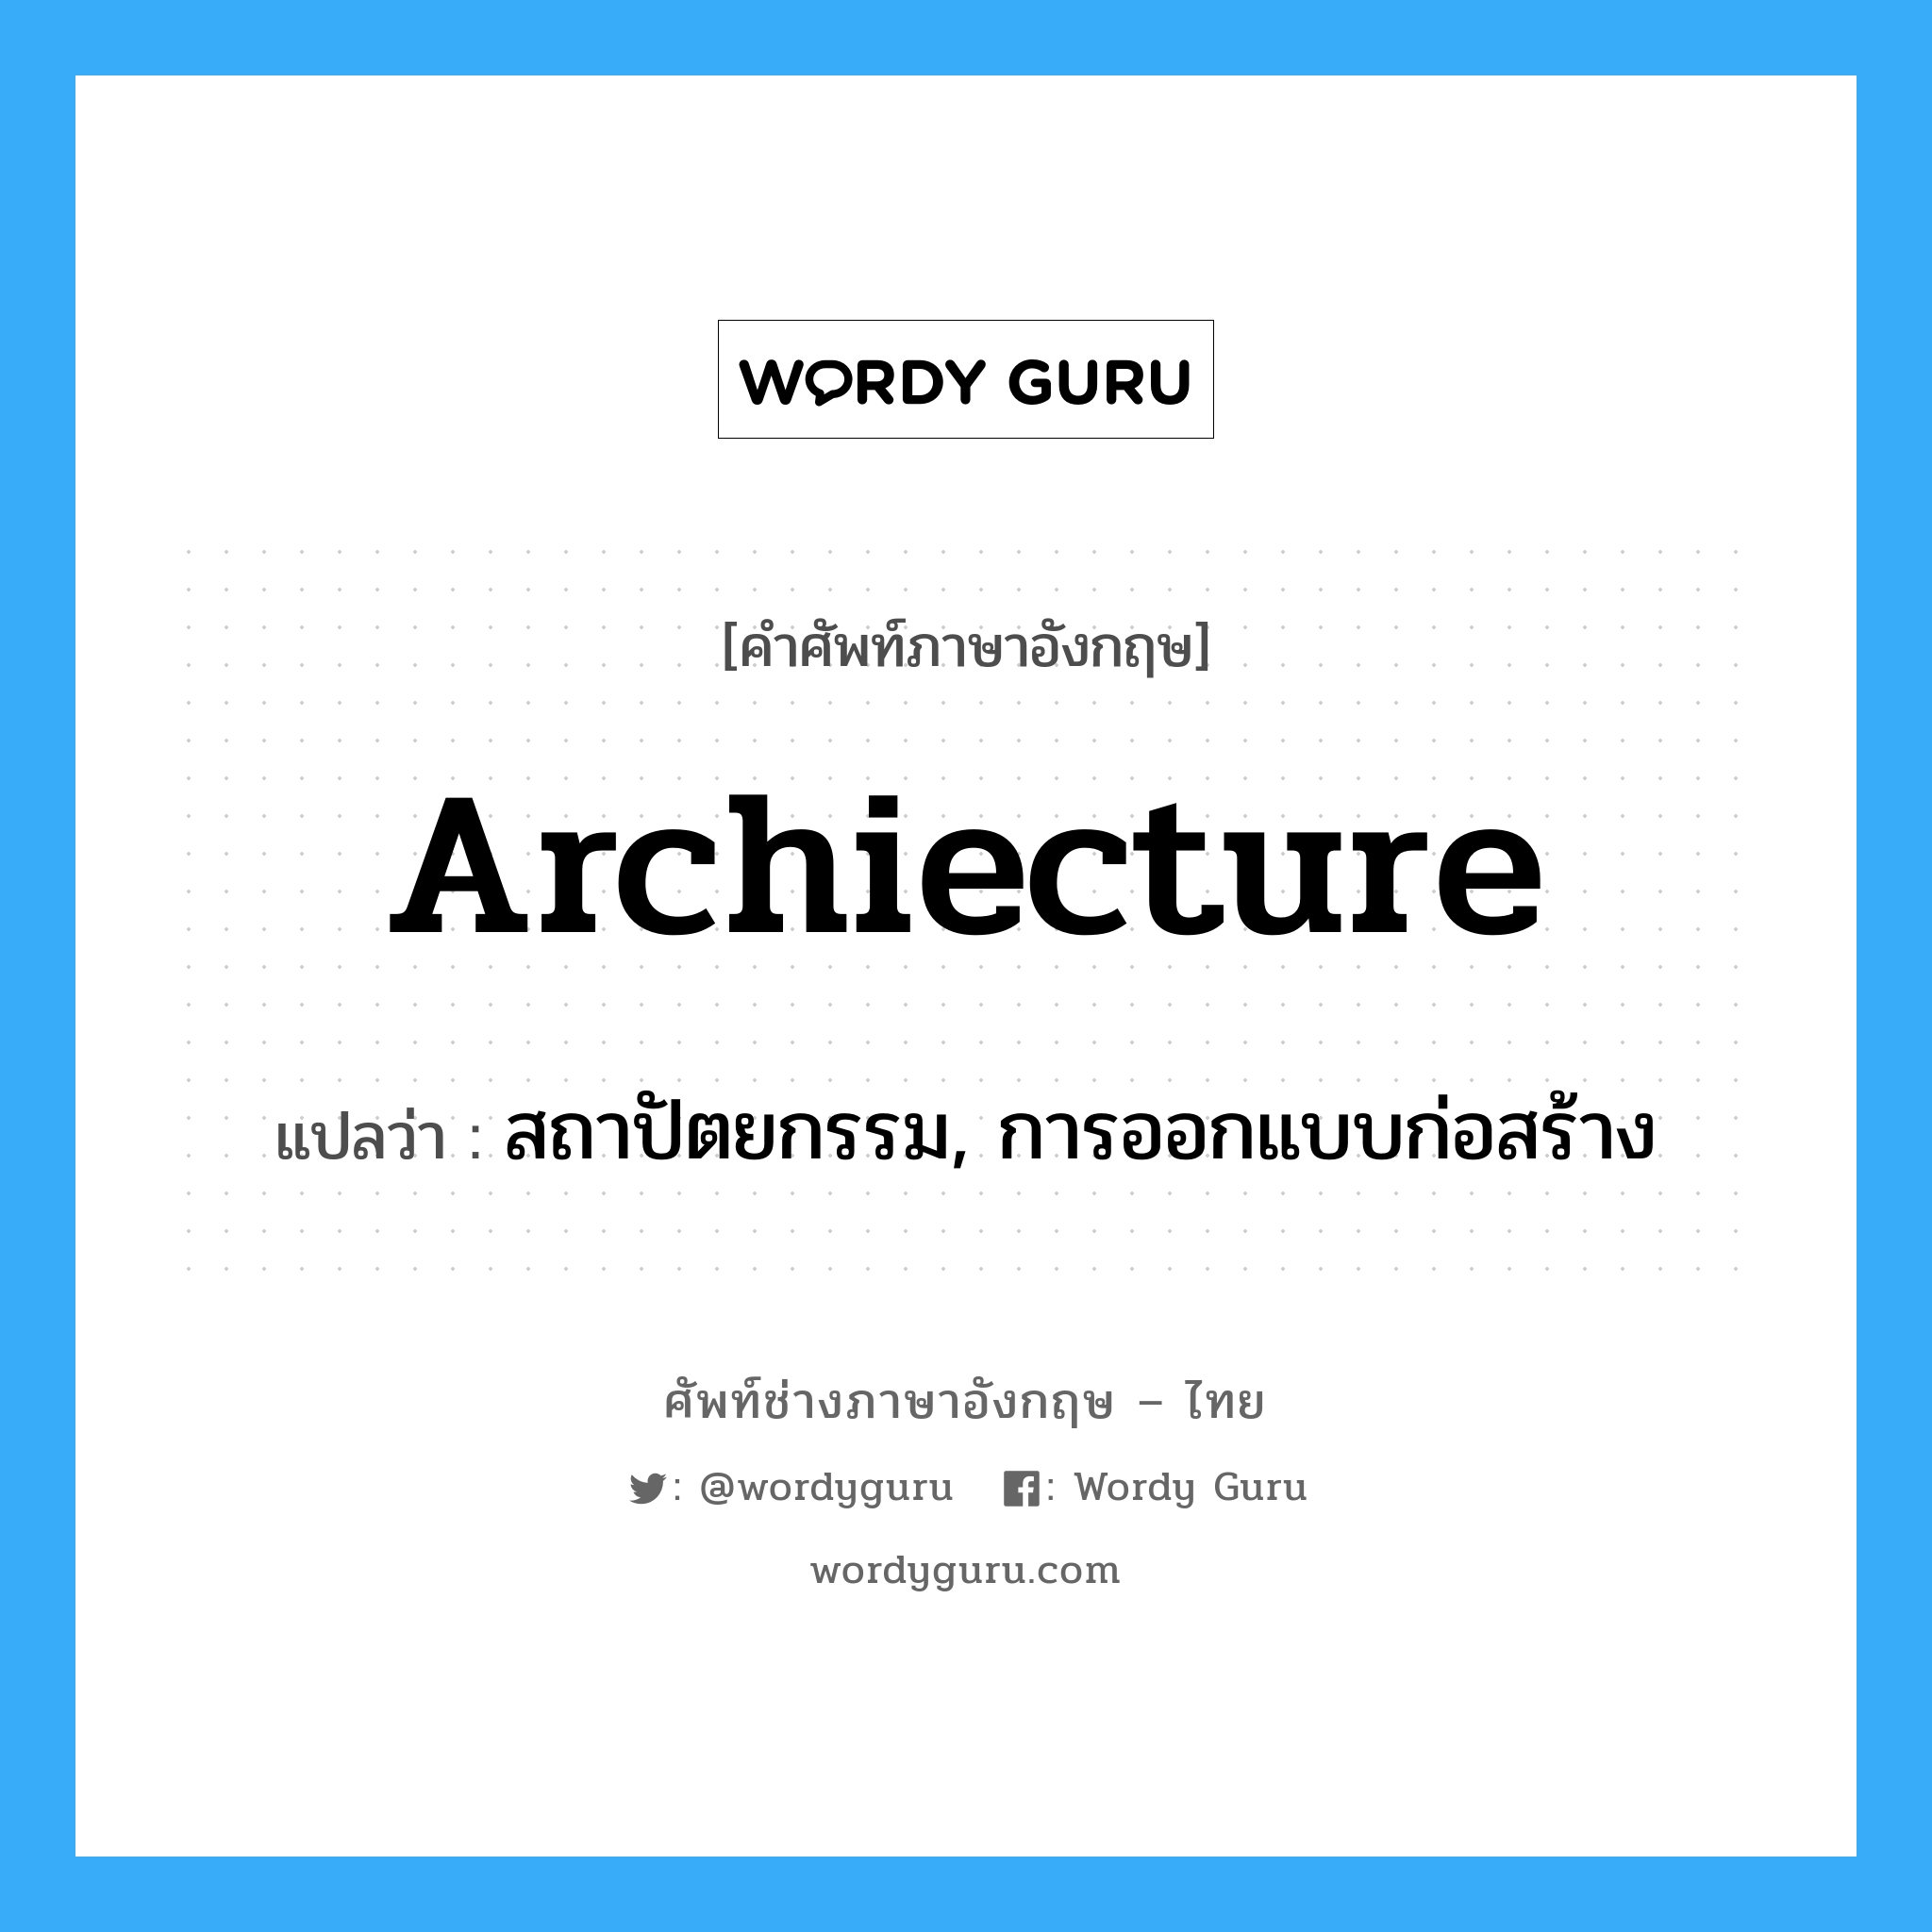 สถาปัตยกรรม, การออกแบบก่อสร้าง ภาษาอังกฤษ?, คำศัพท์ช่างภาษาอังกฤษ - ไทย สถาปัตยกรรม, การออกแบบก่อสร้าง คำศัพท์ภาษาอังกฤษ สถาปัตยกรรม, การออกแบบก่อสร้าง แปลว่า archiecture